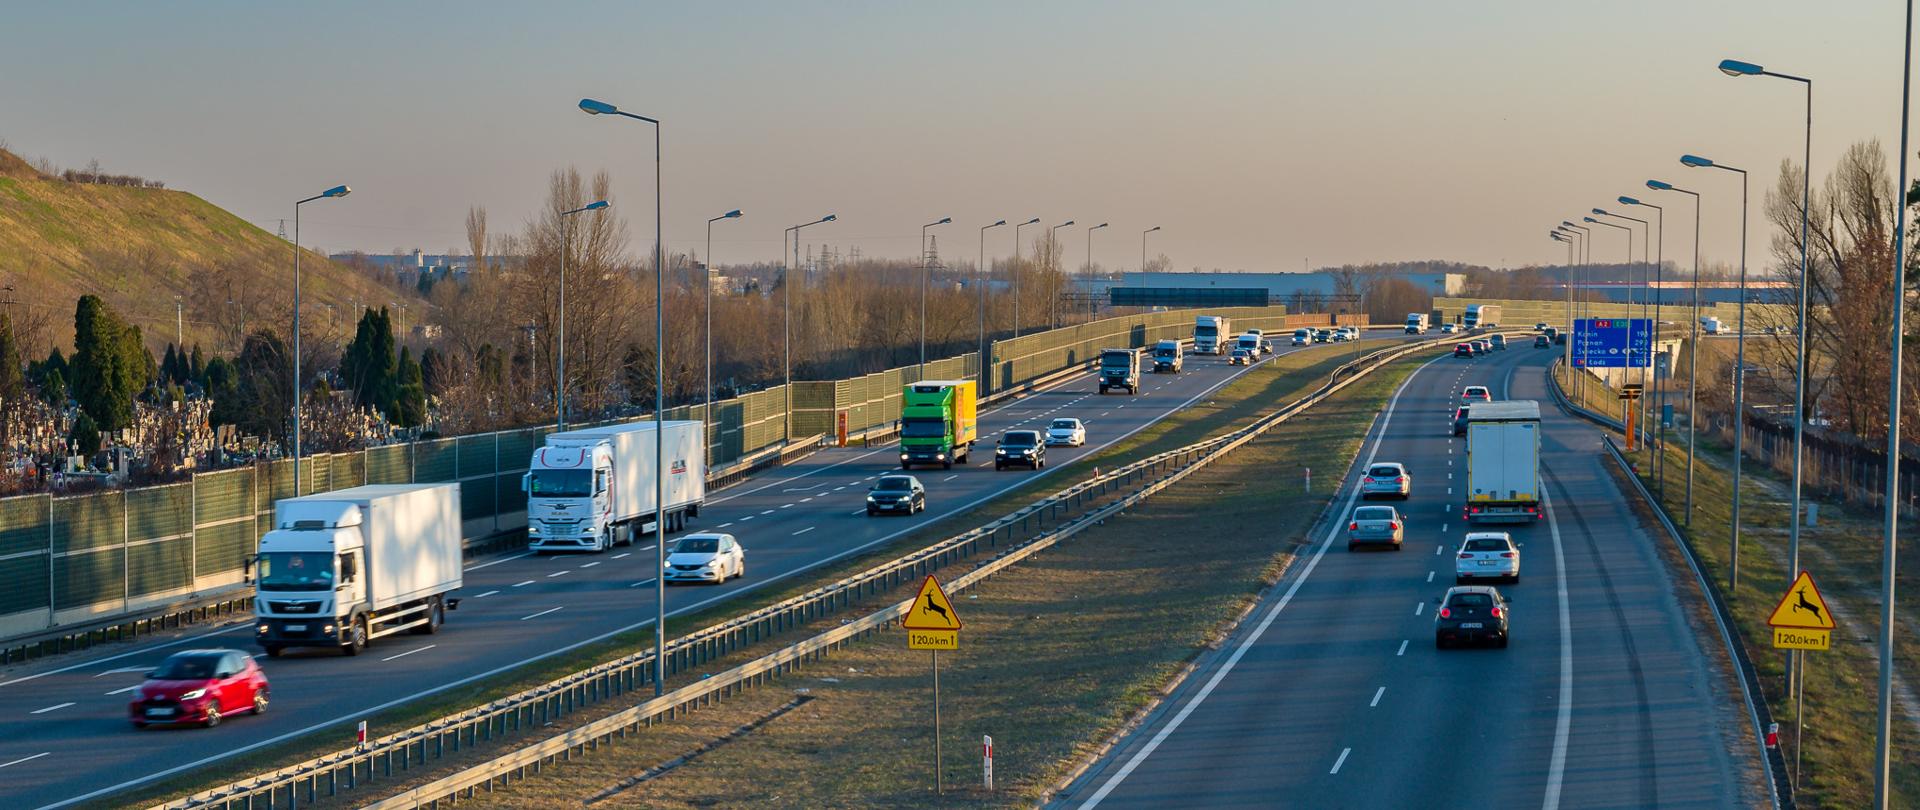 Dwujezdniowa autostrada rozdzielona pasem zieleni z barierkami. Duży ruch samochodów osobowych i ciężarowych w obu kierunkach. 